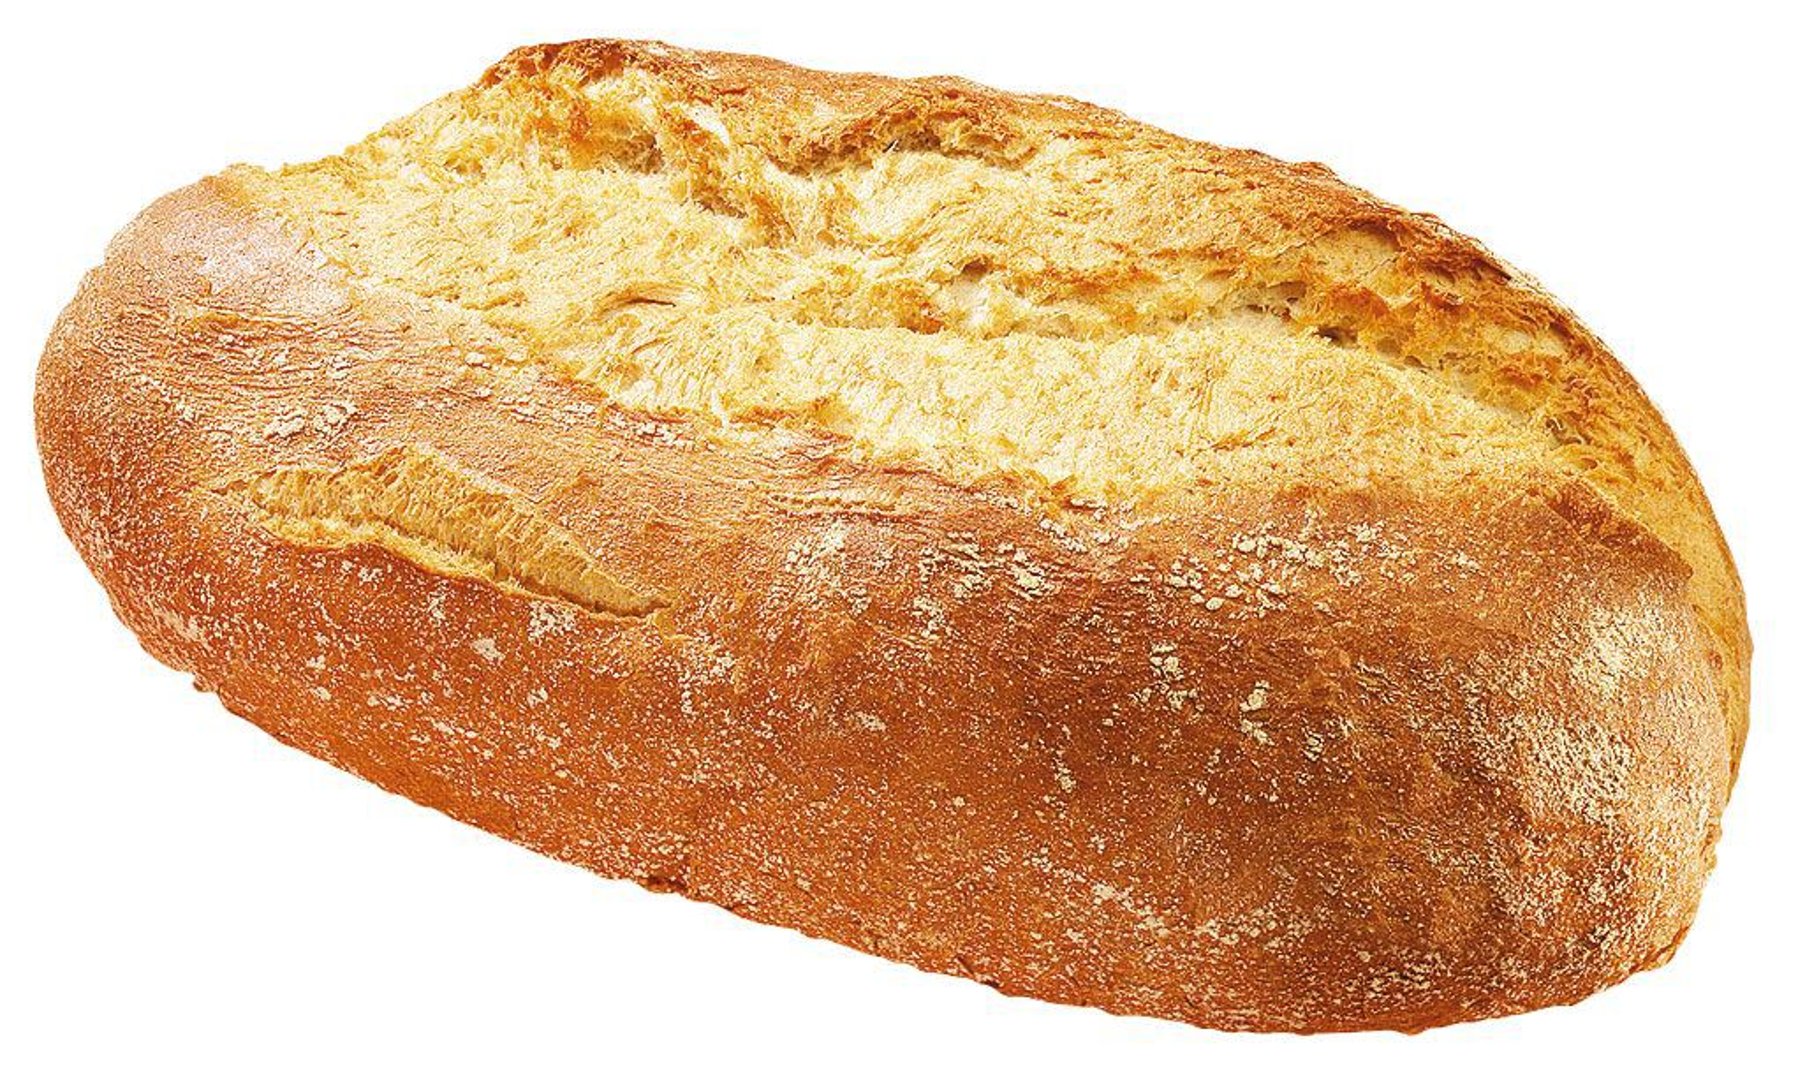 Edna - Krusten Brot lang tiefgefroren, fertig gebacken 12 Stück à 500 g - 6 kg Karton